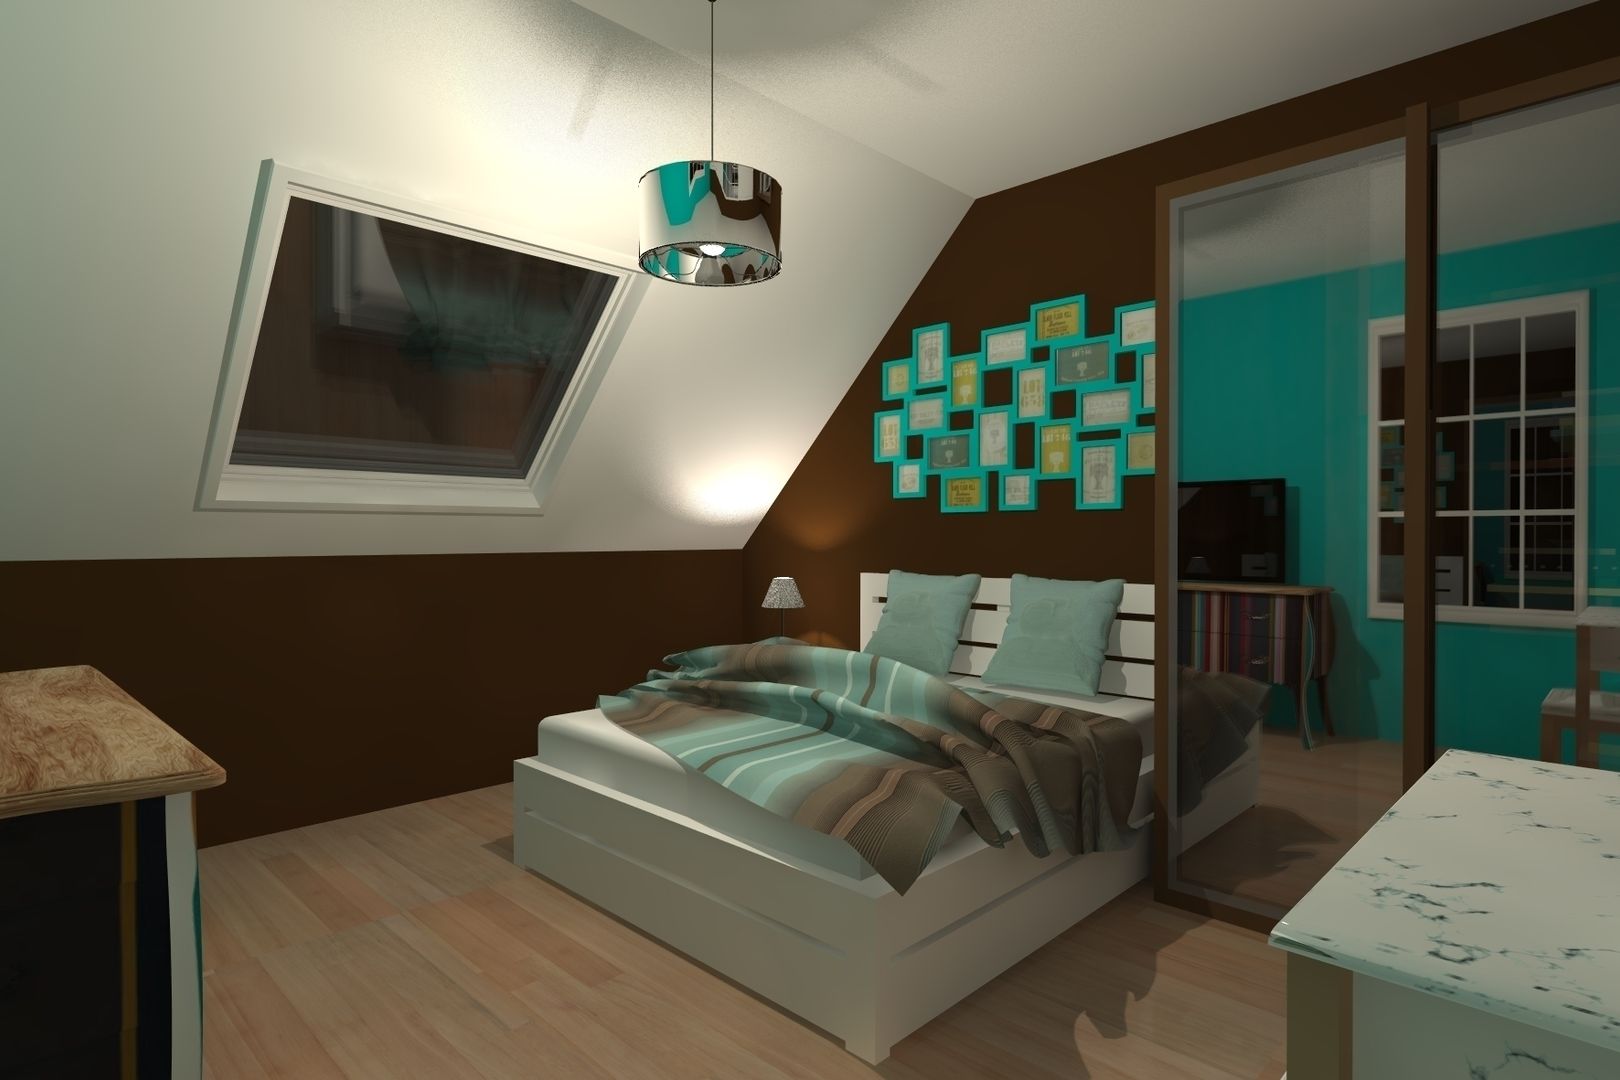 AMENAGEMENT INTERIEUR #007, HOME LAB' HOME LAB' Dormitorios modernos Accesorios y decoración